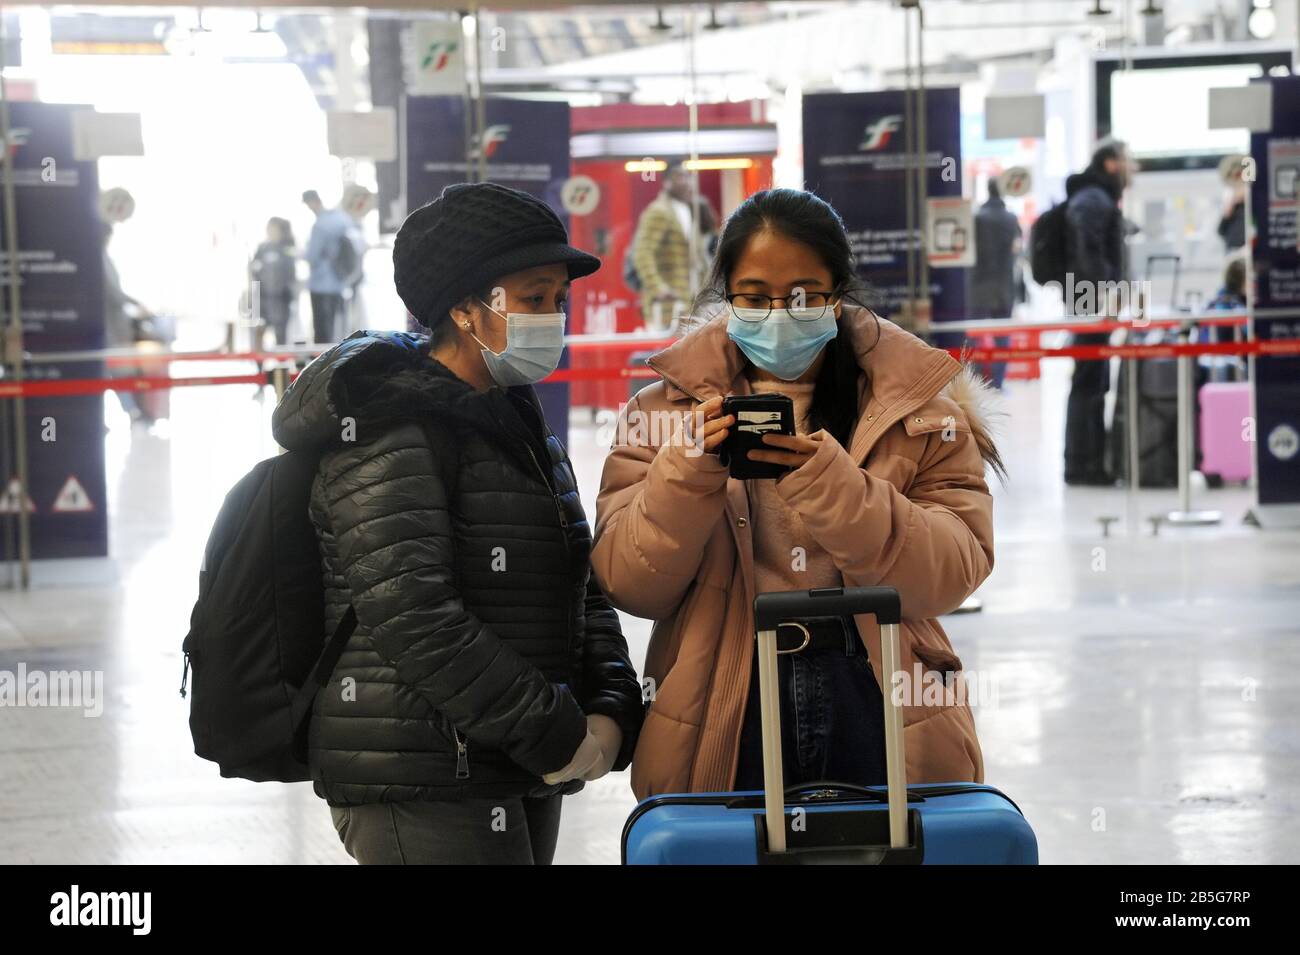 Mailand, 8. März 2020, Mailand Hauptbahnhof halb verlassen nach dem Regierungsdekret, der weite Teile Norditaliens isoliert, um die Epidemie von Coronavirus 19 zu stoppen Stockfoto